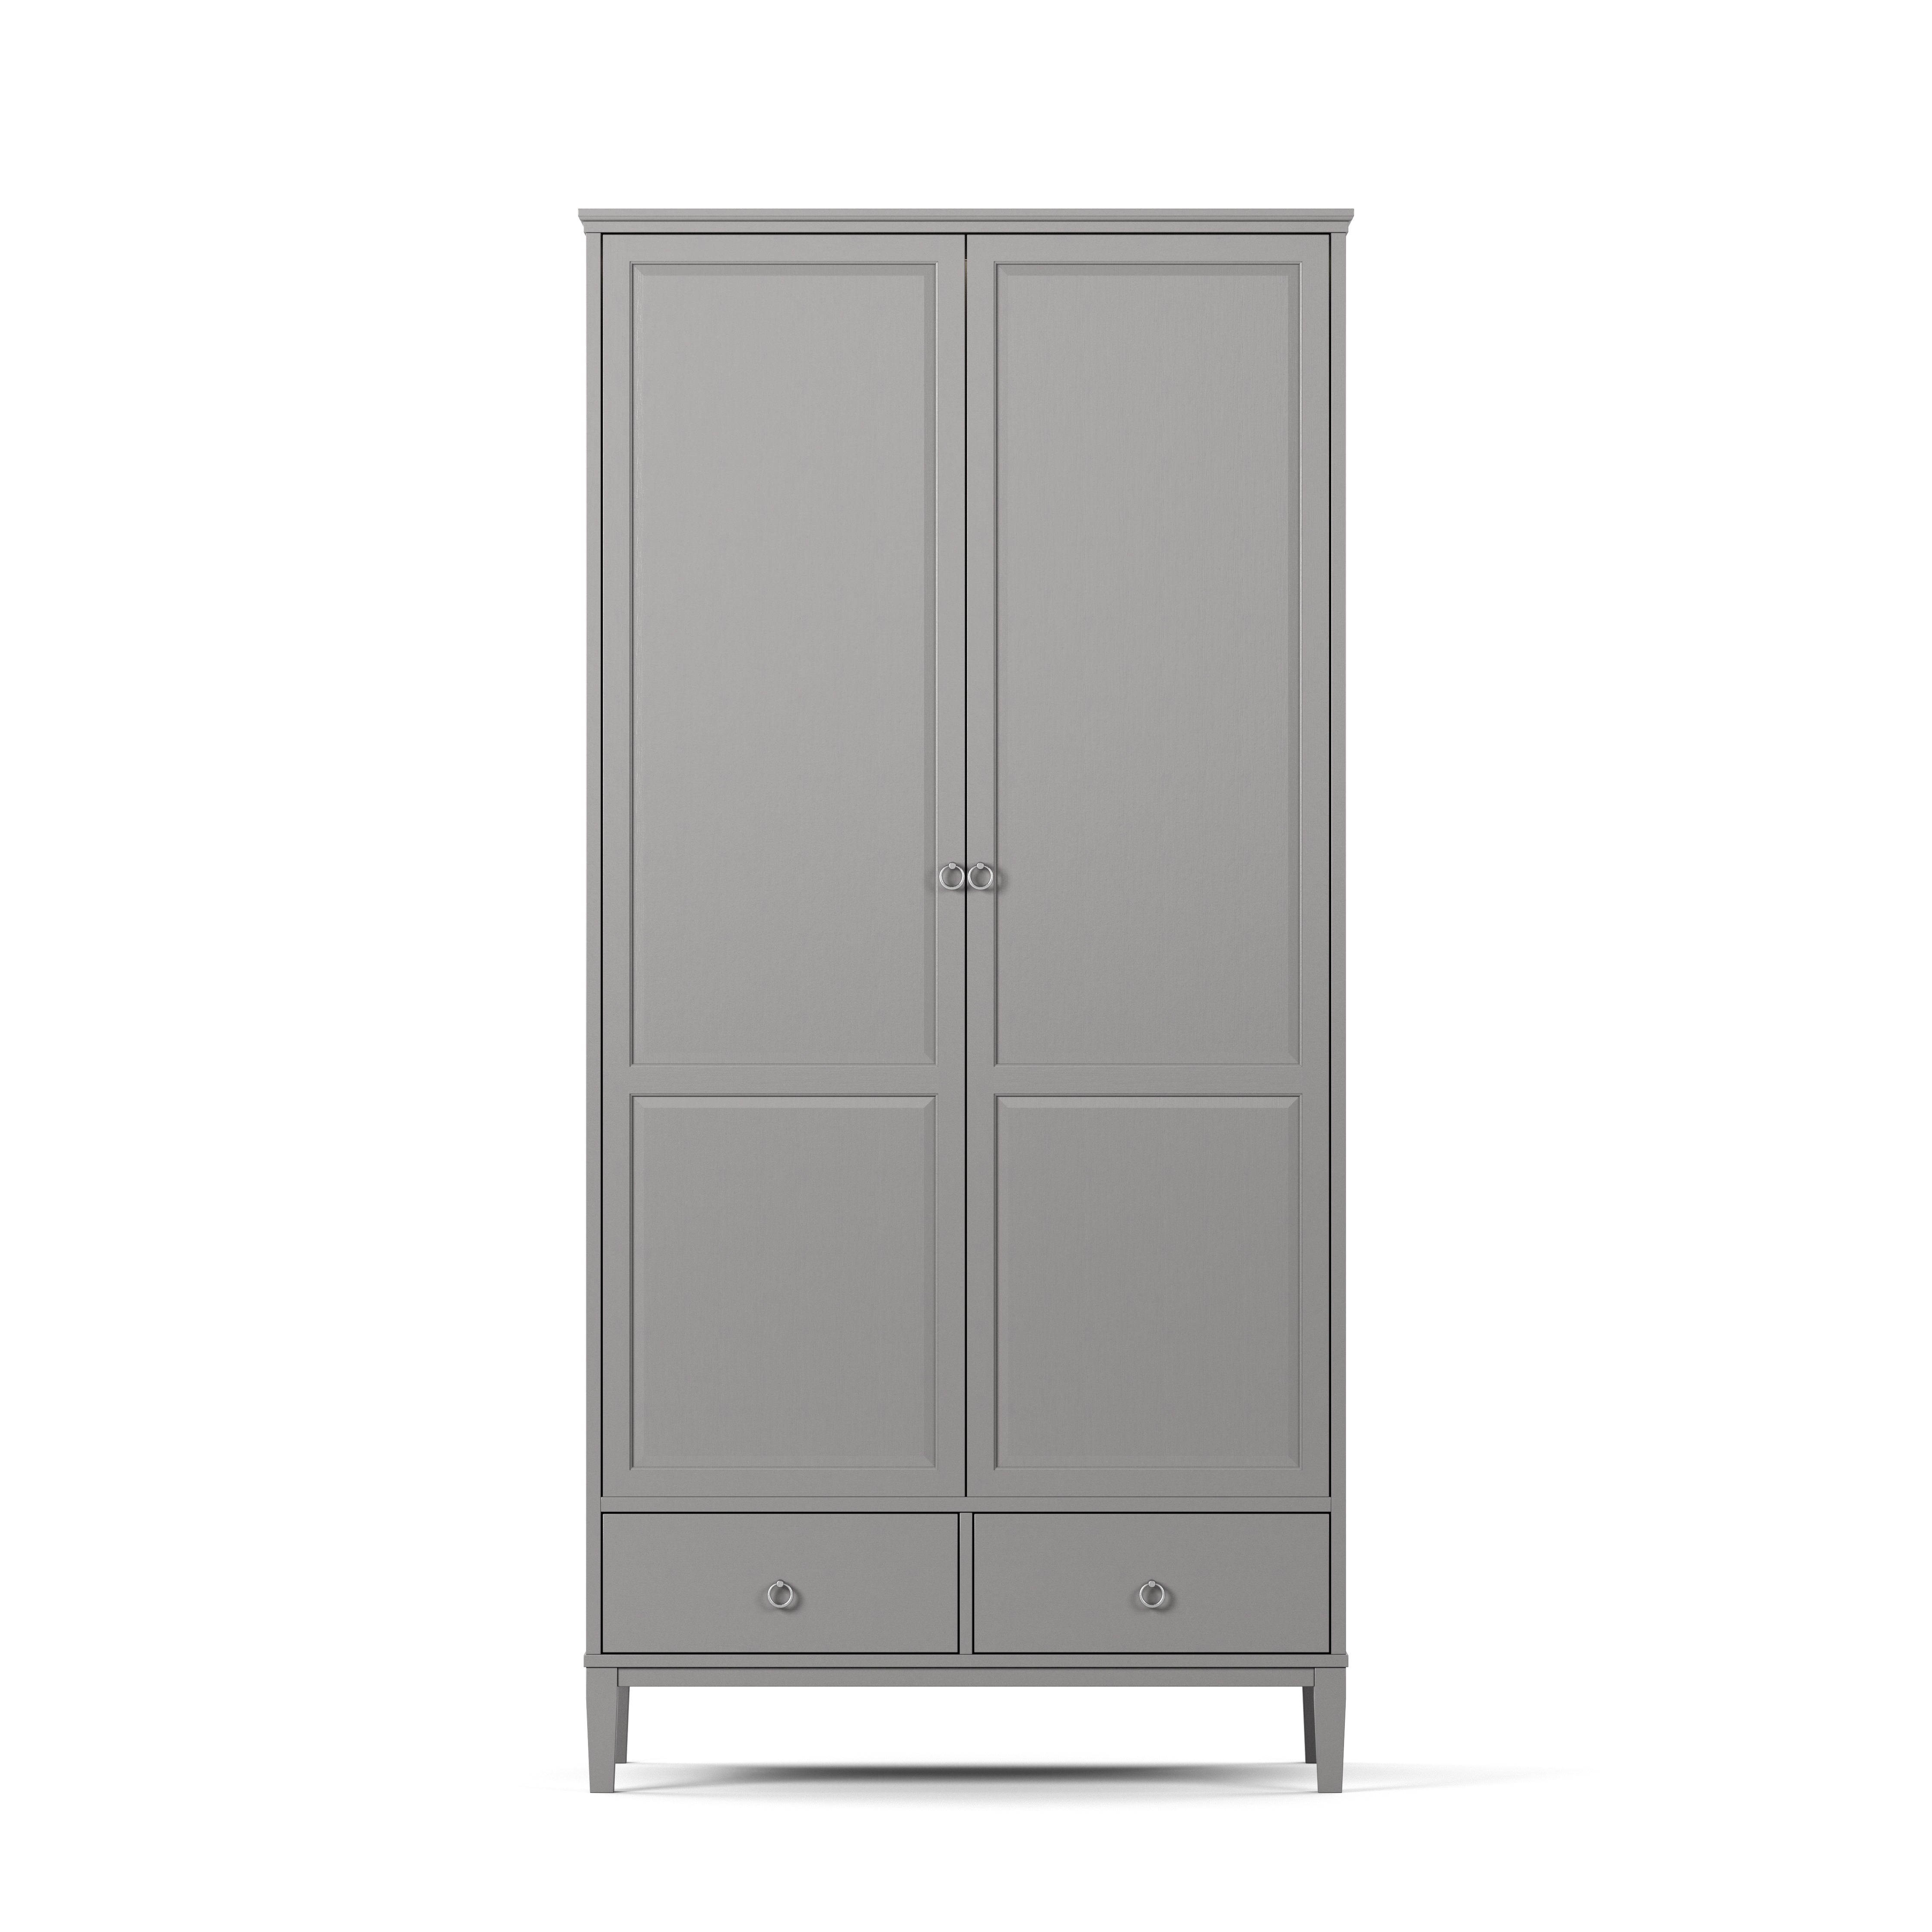 Englesson Garderob Grey Stockholm 2.0 Garderob 536WW2 #färg_Grey #Colour_Grey